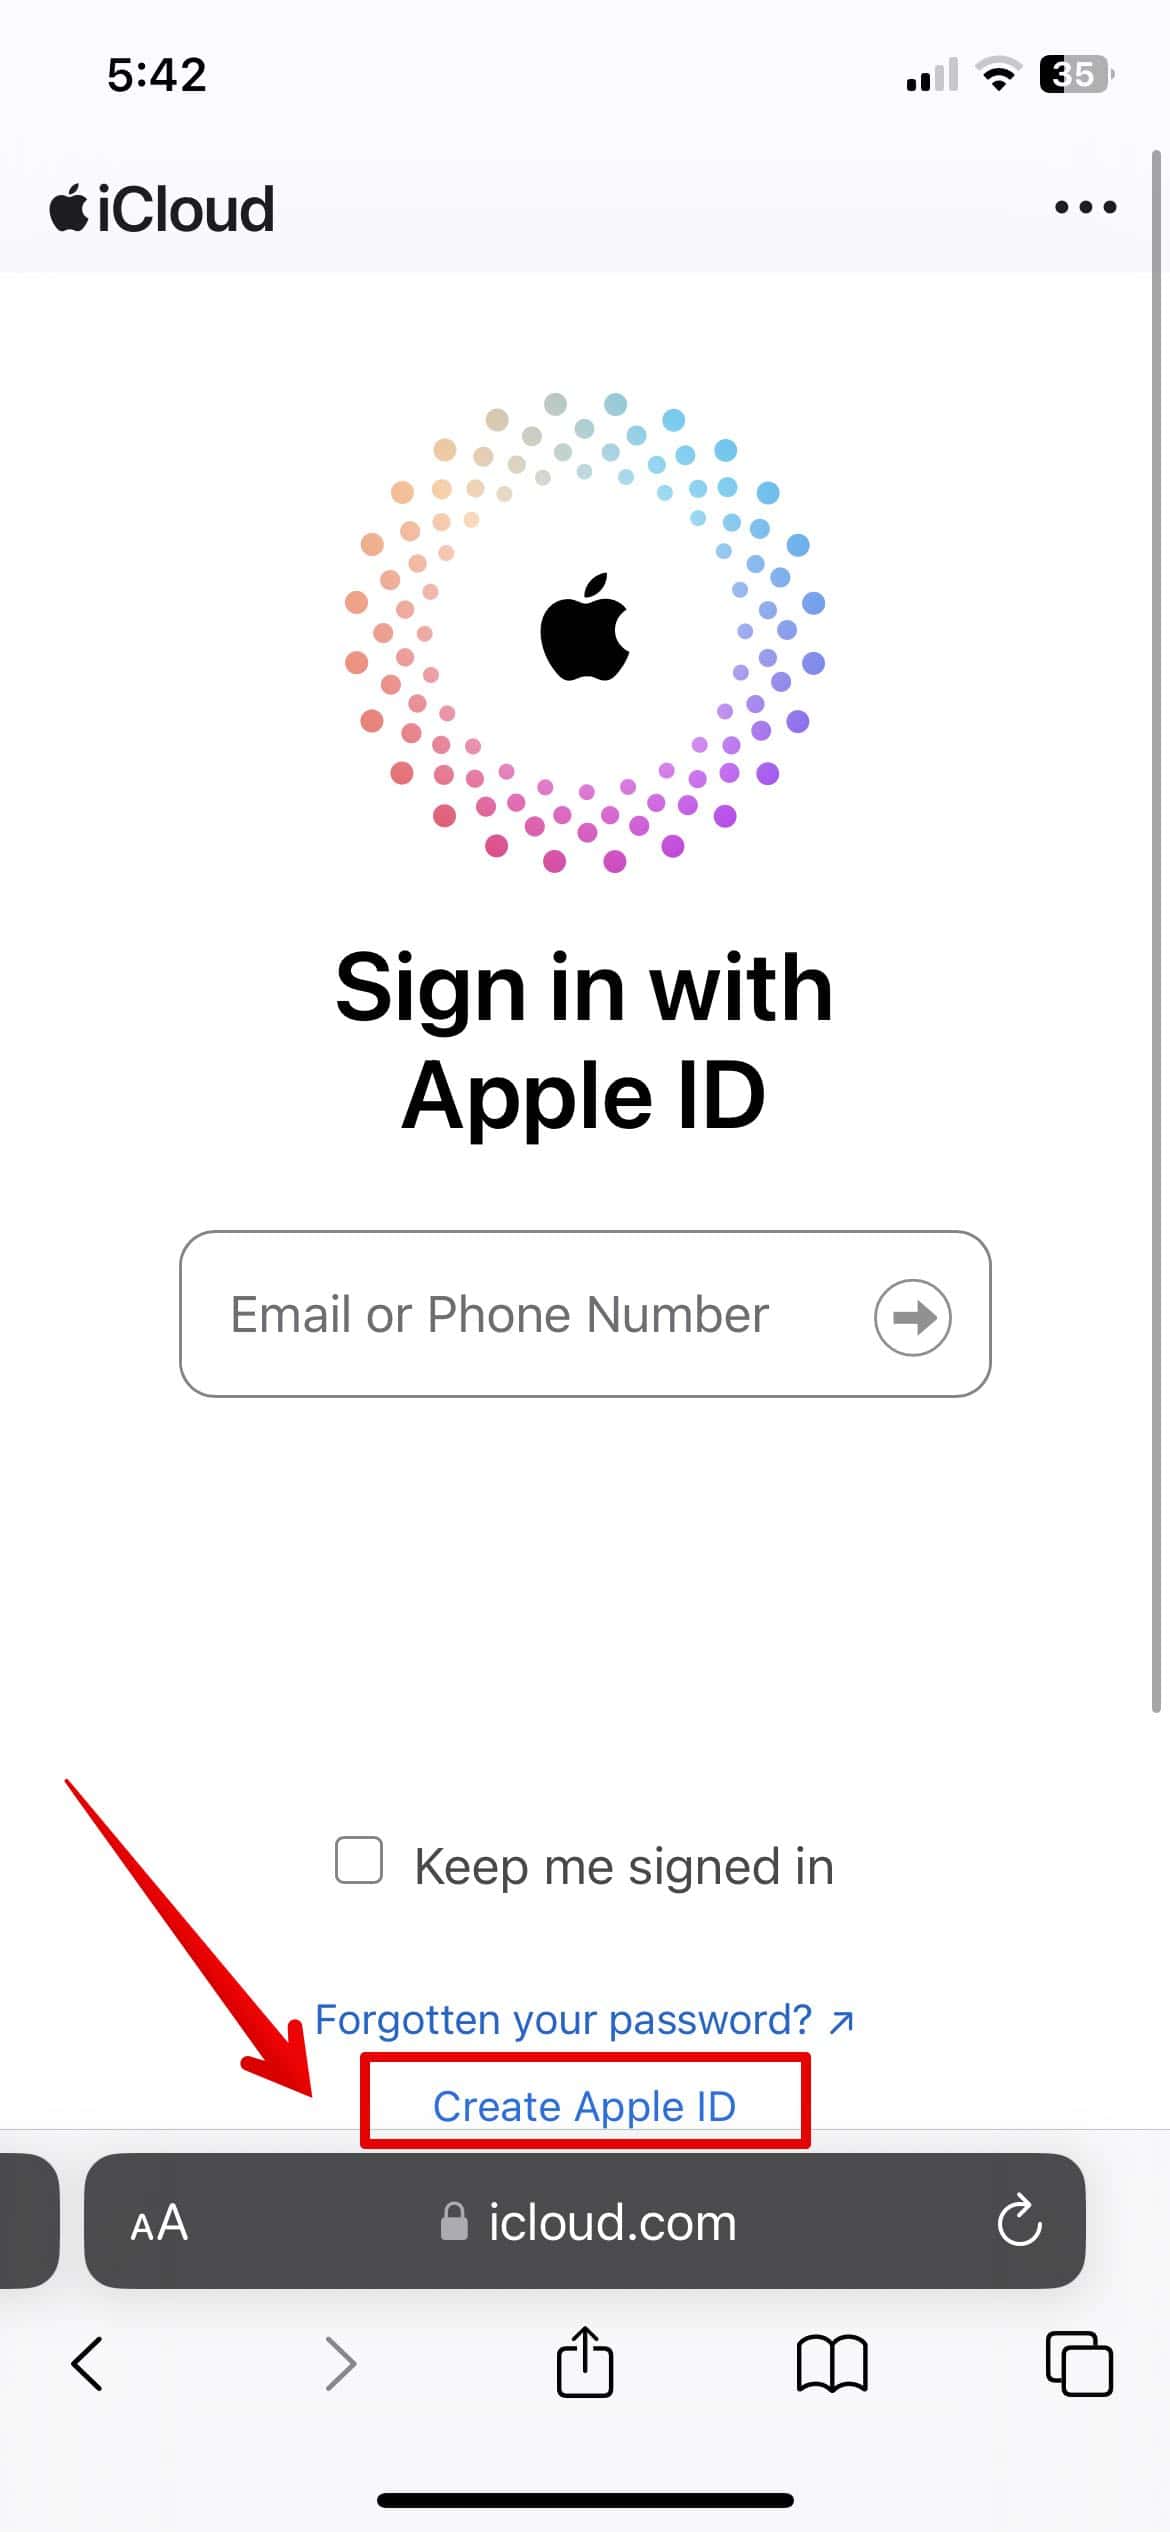 Tap on Create Apple ID